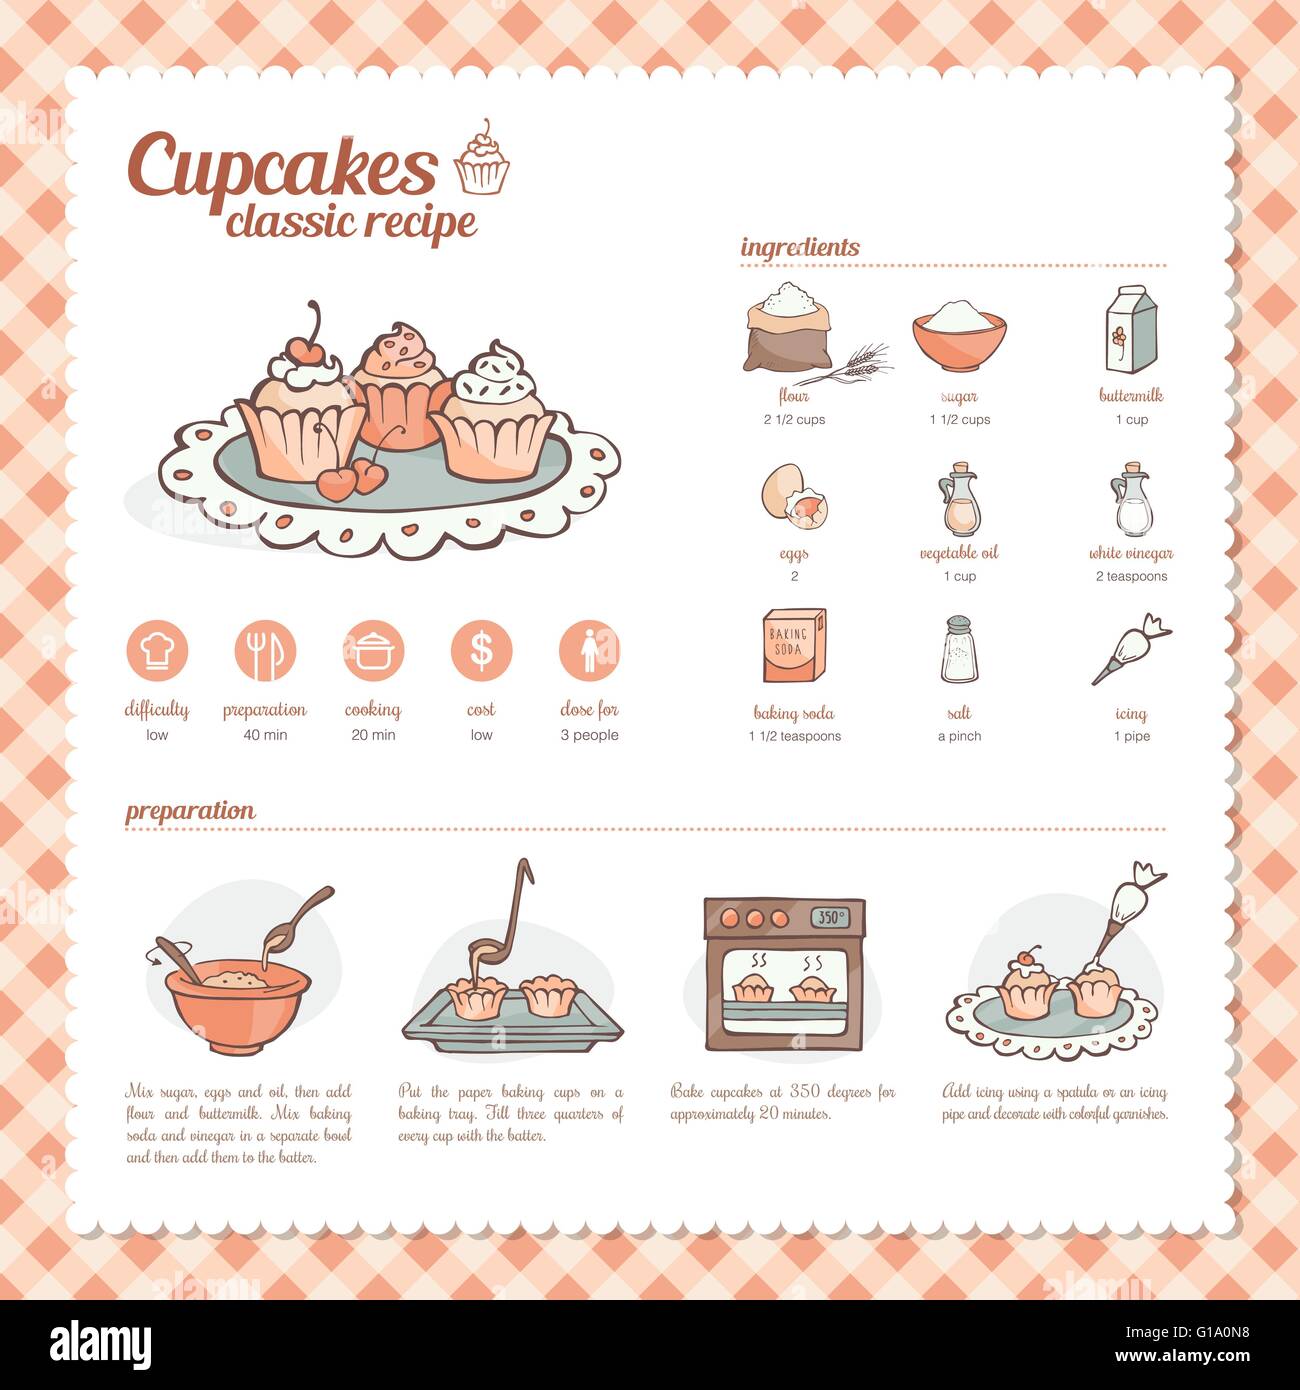 Cupcakes et muffins recette classique avec ingtredients dessinés à la main, de la préparation et de l'icons set Illustration de Vecteur